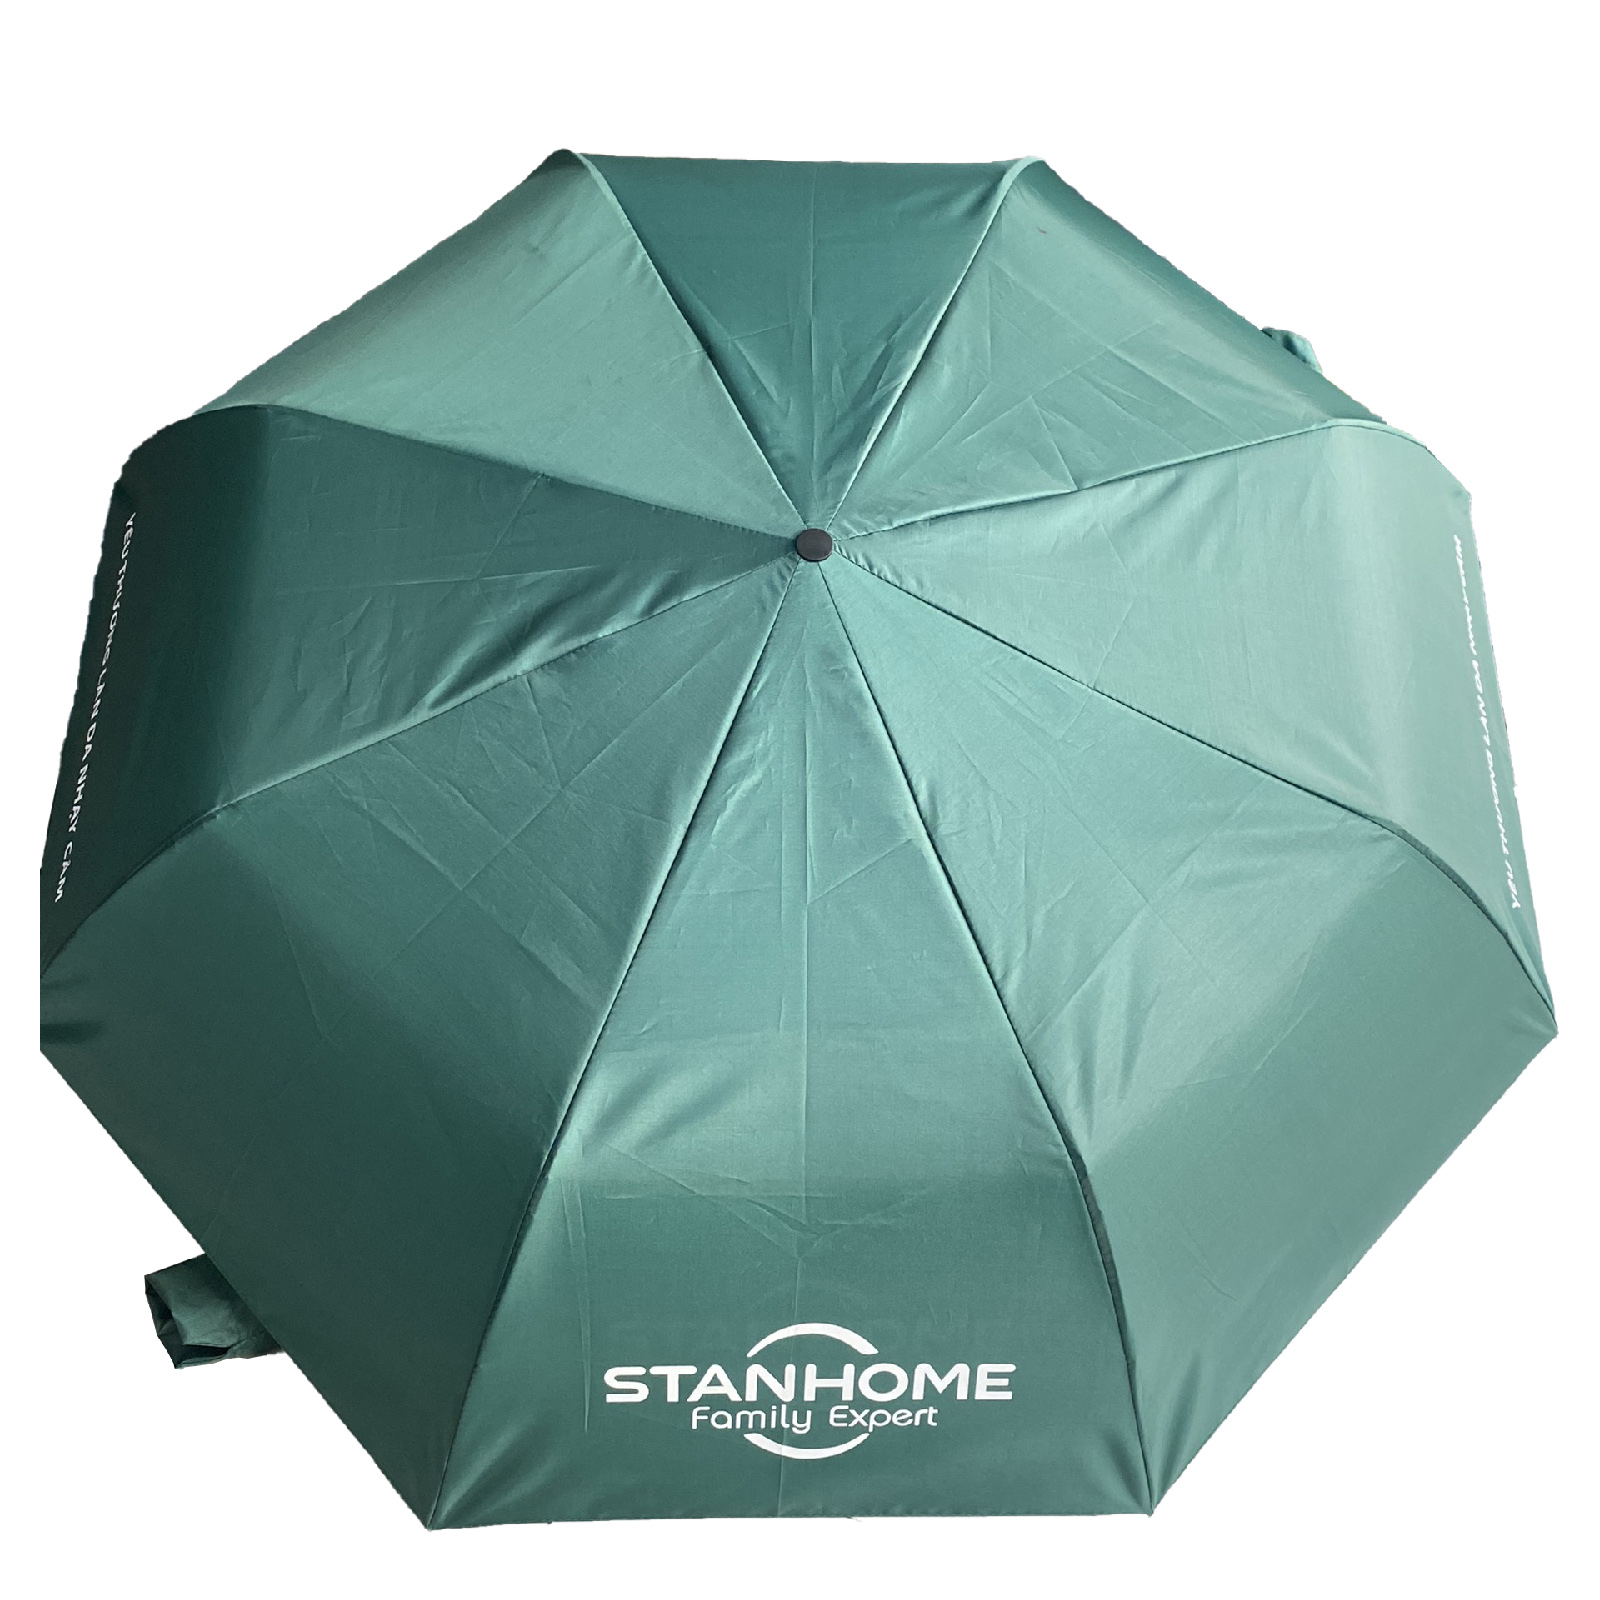 Hình ảnh Ô dù cầm tay che mưa đi nắng 8 nan mở tự động gấp nhỏ gọn cầm tay in logo thương hiệu Stanhome